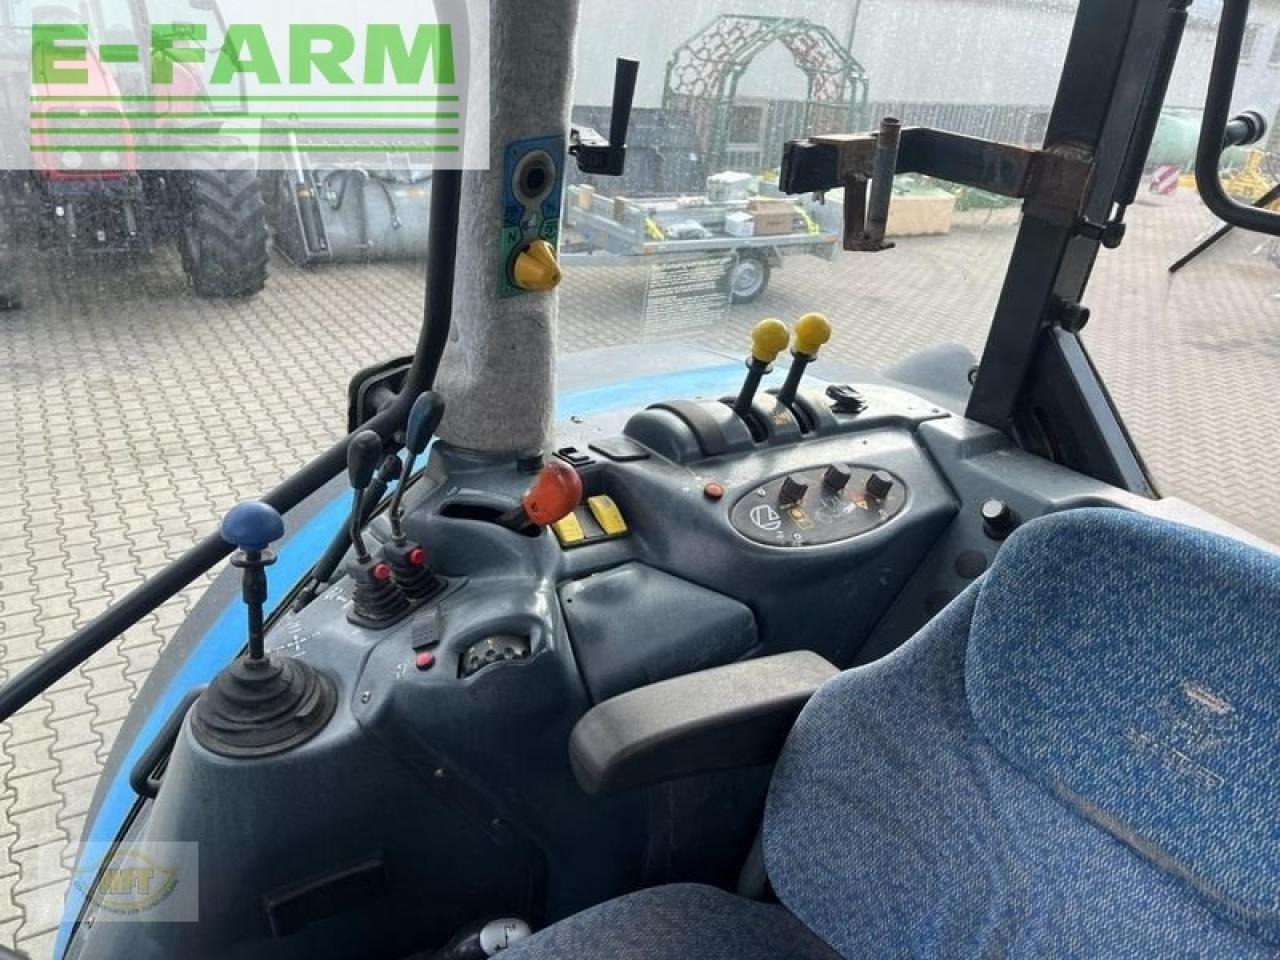 Farm tractor Landini legend 180: picture 8